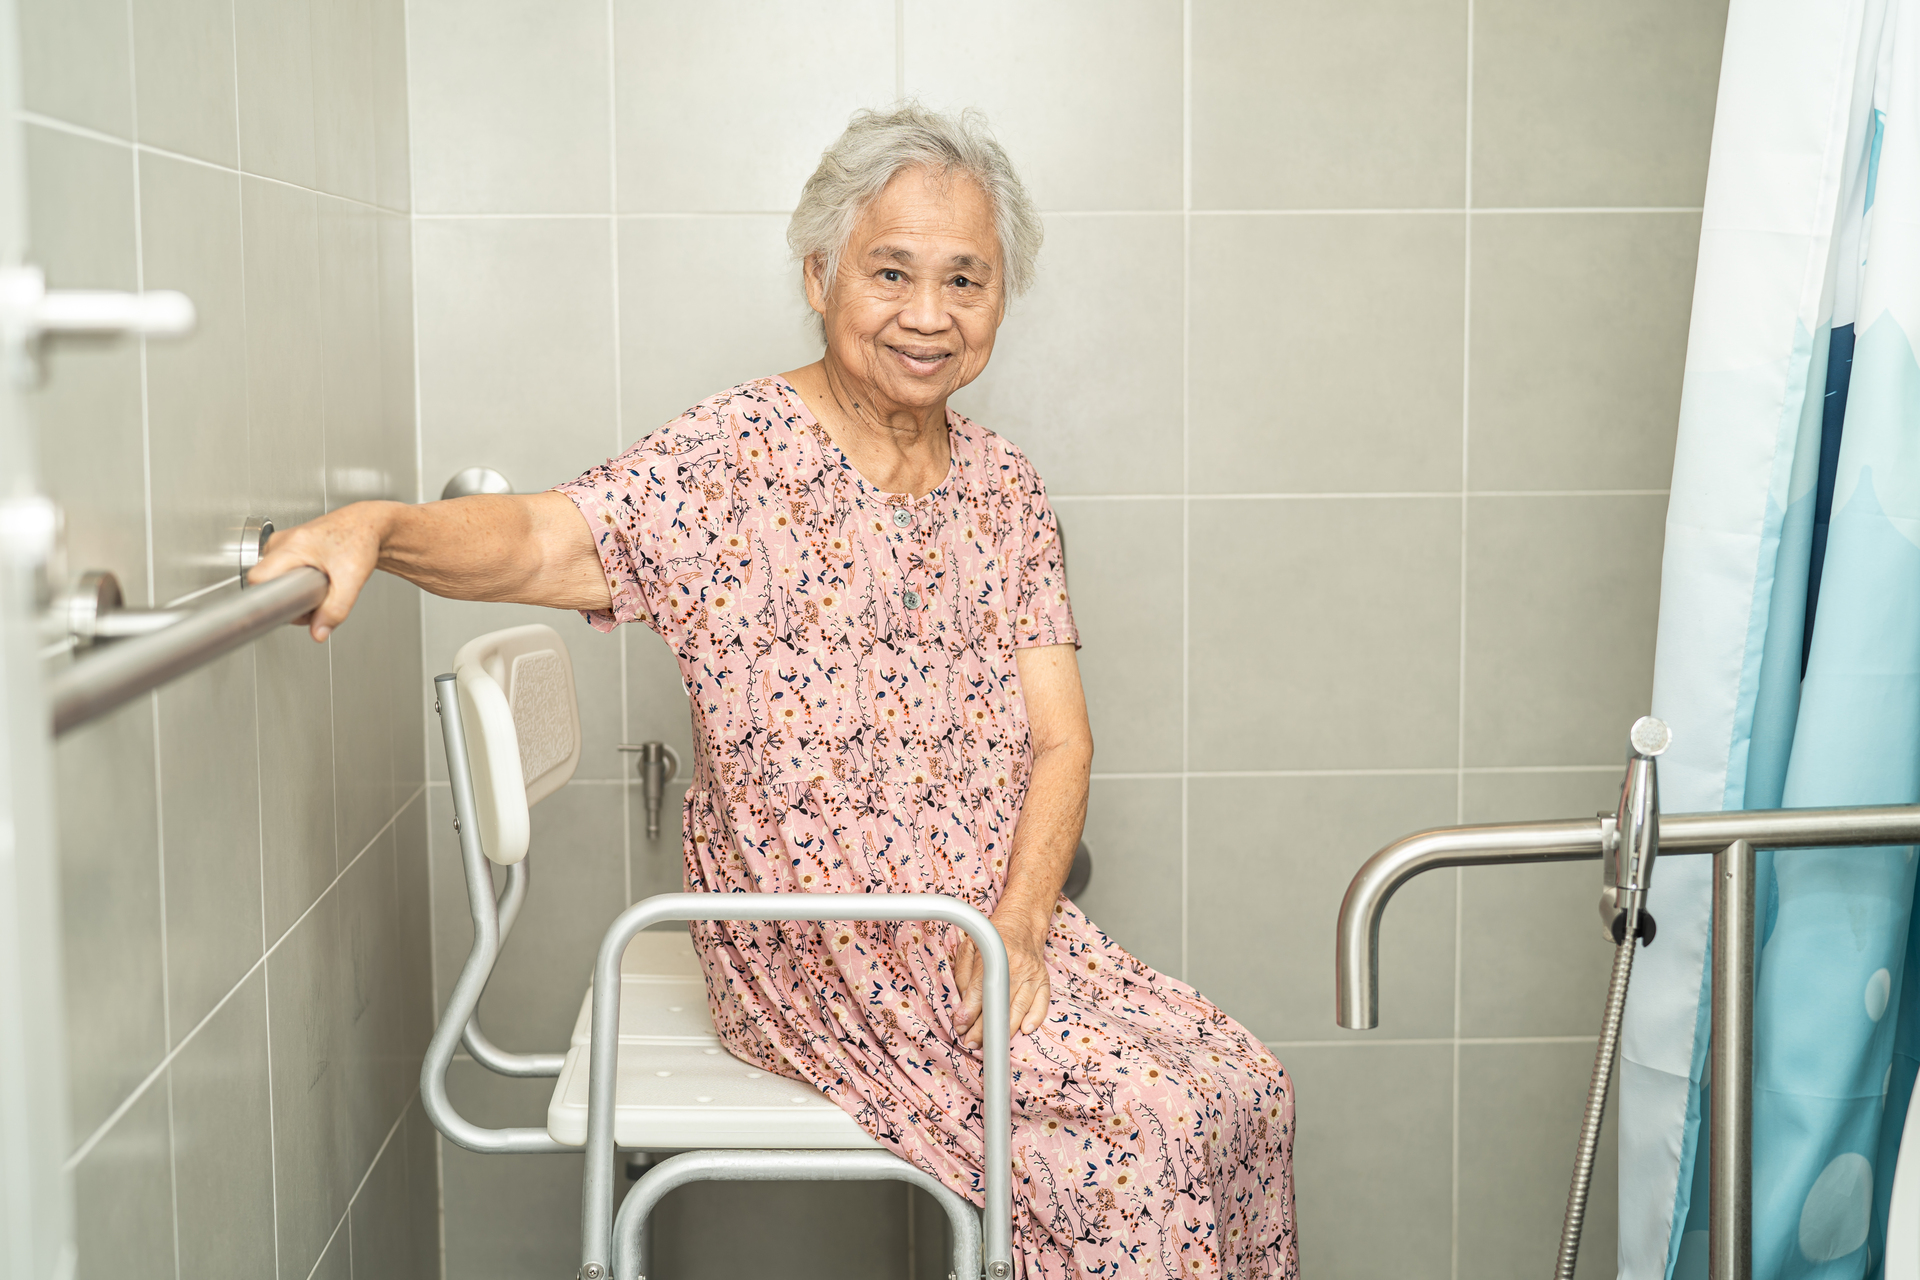 Na obrazku widoczna jest uśmiechnięta seniorka w łazience przystosowanej dla seniorów, pełnej funkcjonalnych udogodnień i elementów zapewniających bezpieczeństwo. Poręcze, podpórki i antypoślizgowe powierzchnie pozwalają jej cieszyć się niezależnością i komfortem podczas codziennych czynności higienicznych. Ten obrazek ukazuje znaczenie odpowiedniego projektowania łazienki dla starszych osób, które mają możliwość korzystania z przestrzeni w sposób wygodny i bezpieczny